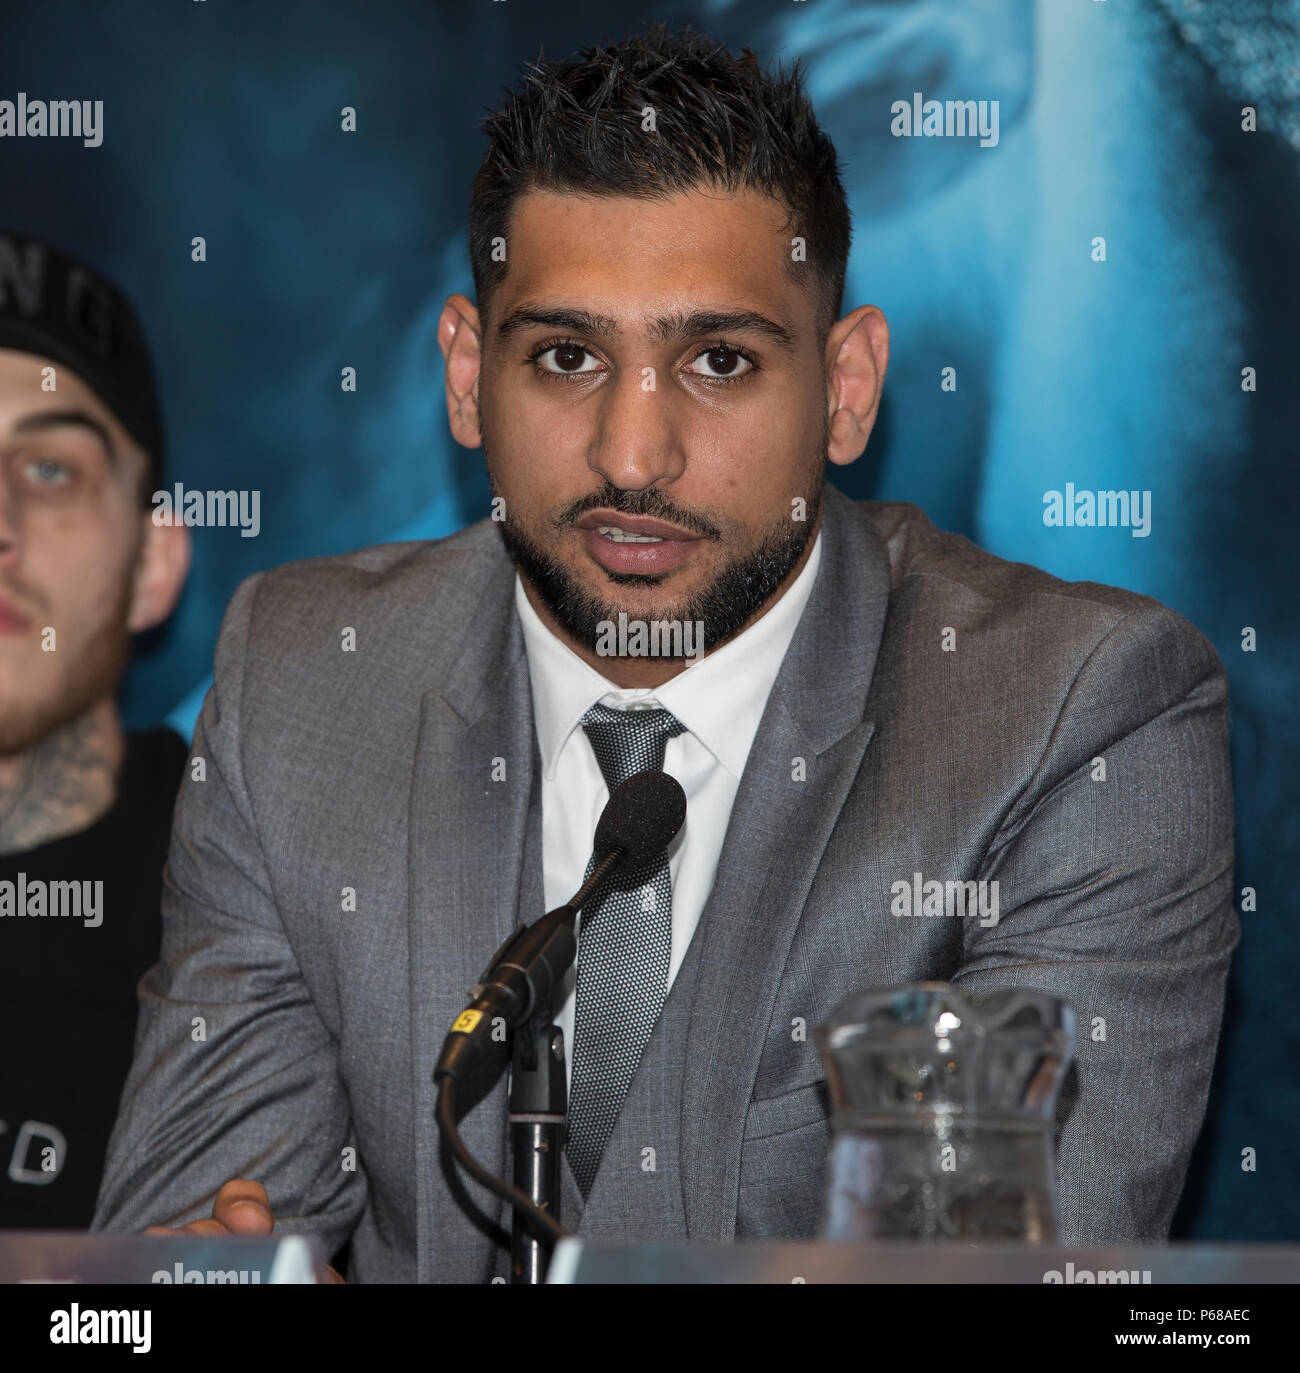 Amir Khan Pressekonferenz - Amir Khan Boxer - Amir Khan v Samuel Vargas Pressekonferenz in Verbindung mit Eddie Hearn und Matchroom Boxen. Stockfoto